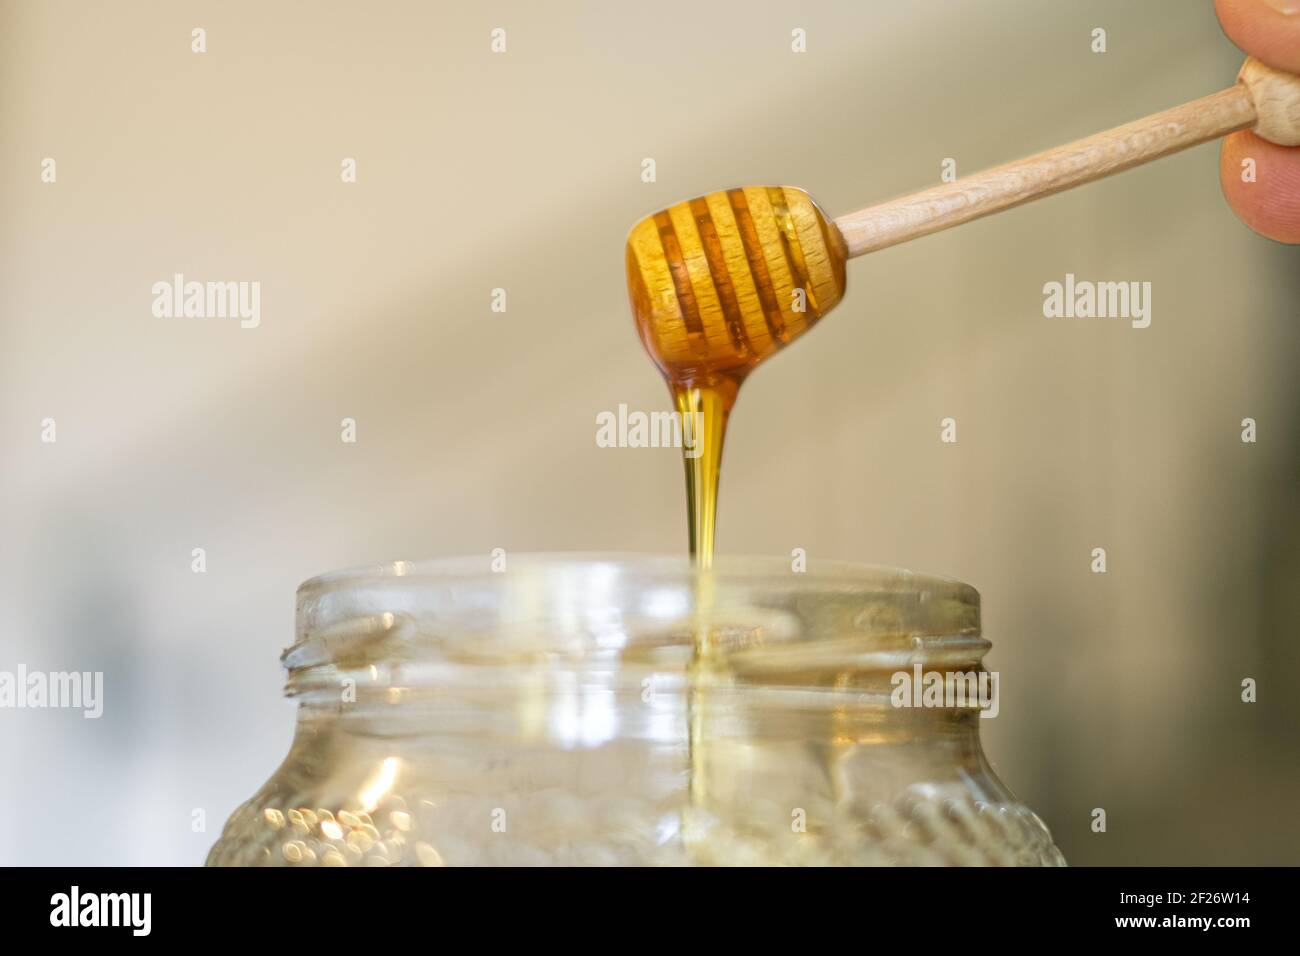 Miele gustoso crudo su un cucchiaia di legno chiuso, colazione sana ingredienti Foto Stock